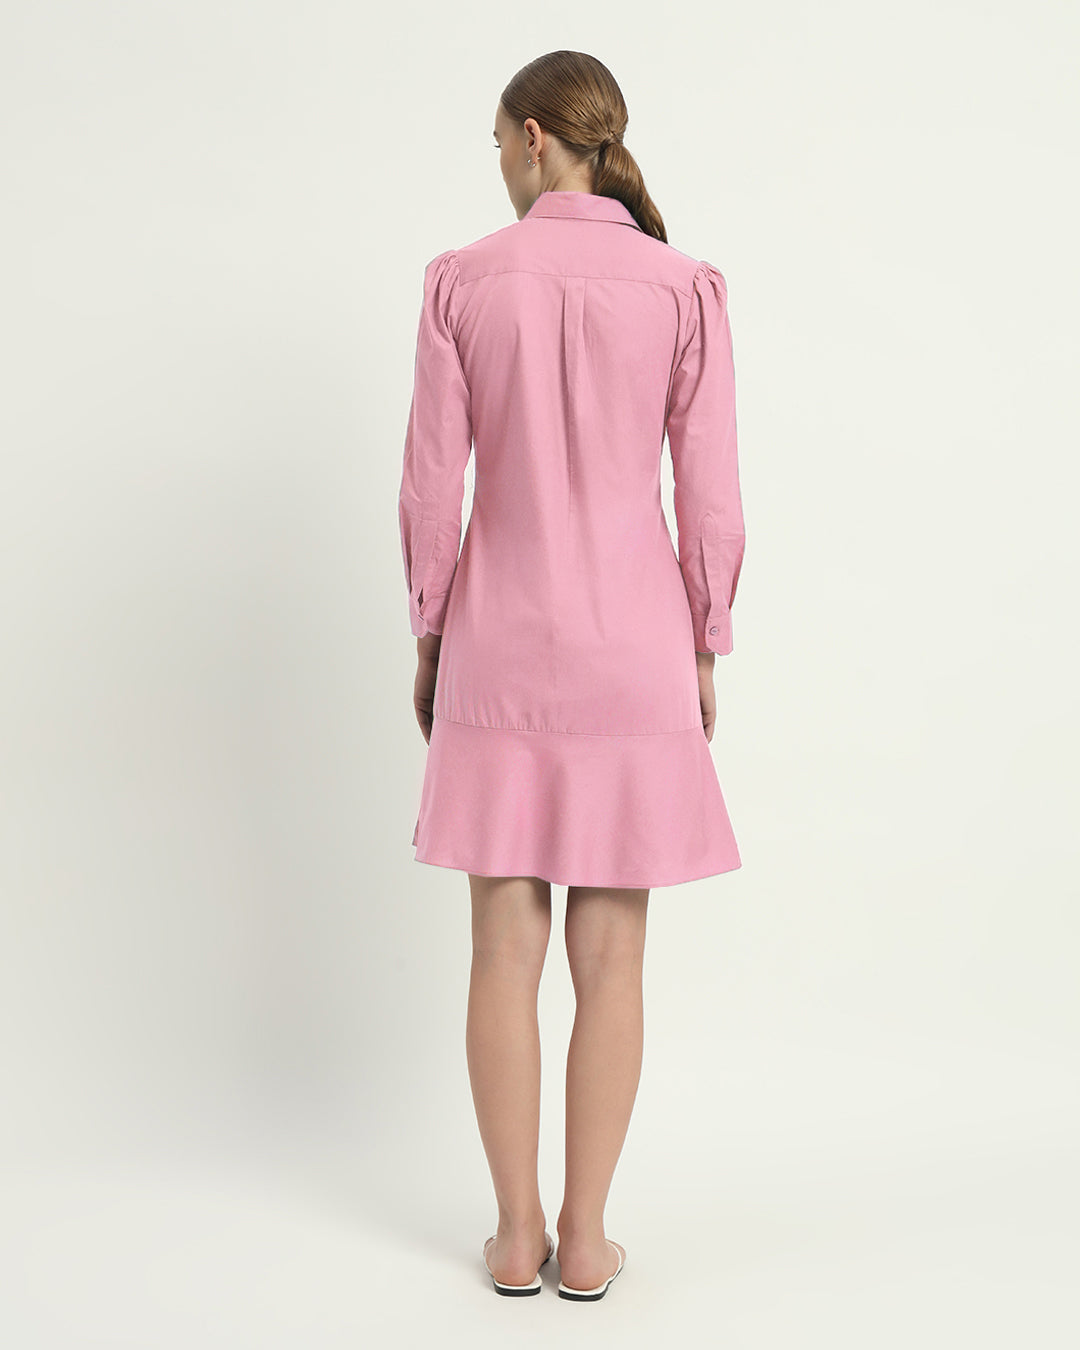 The Lyon Fondant Pink Cotton Dress